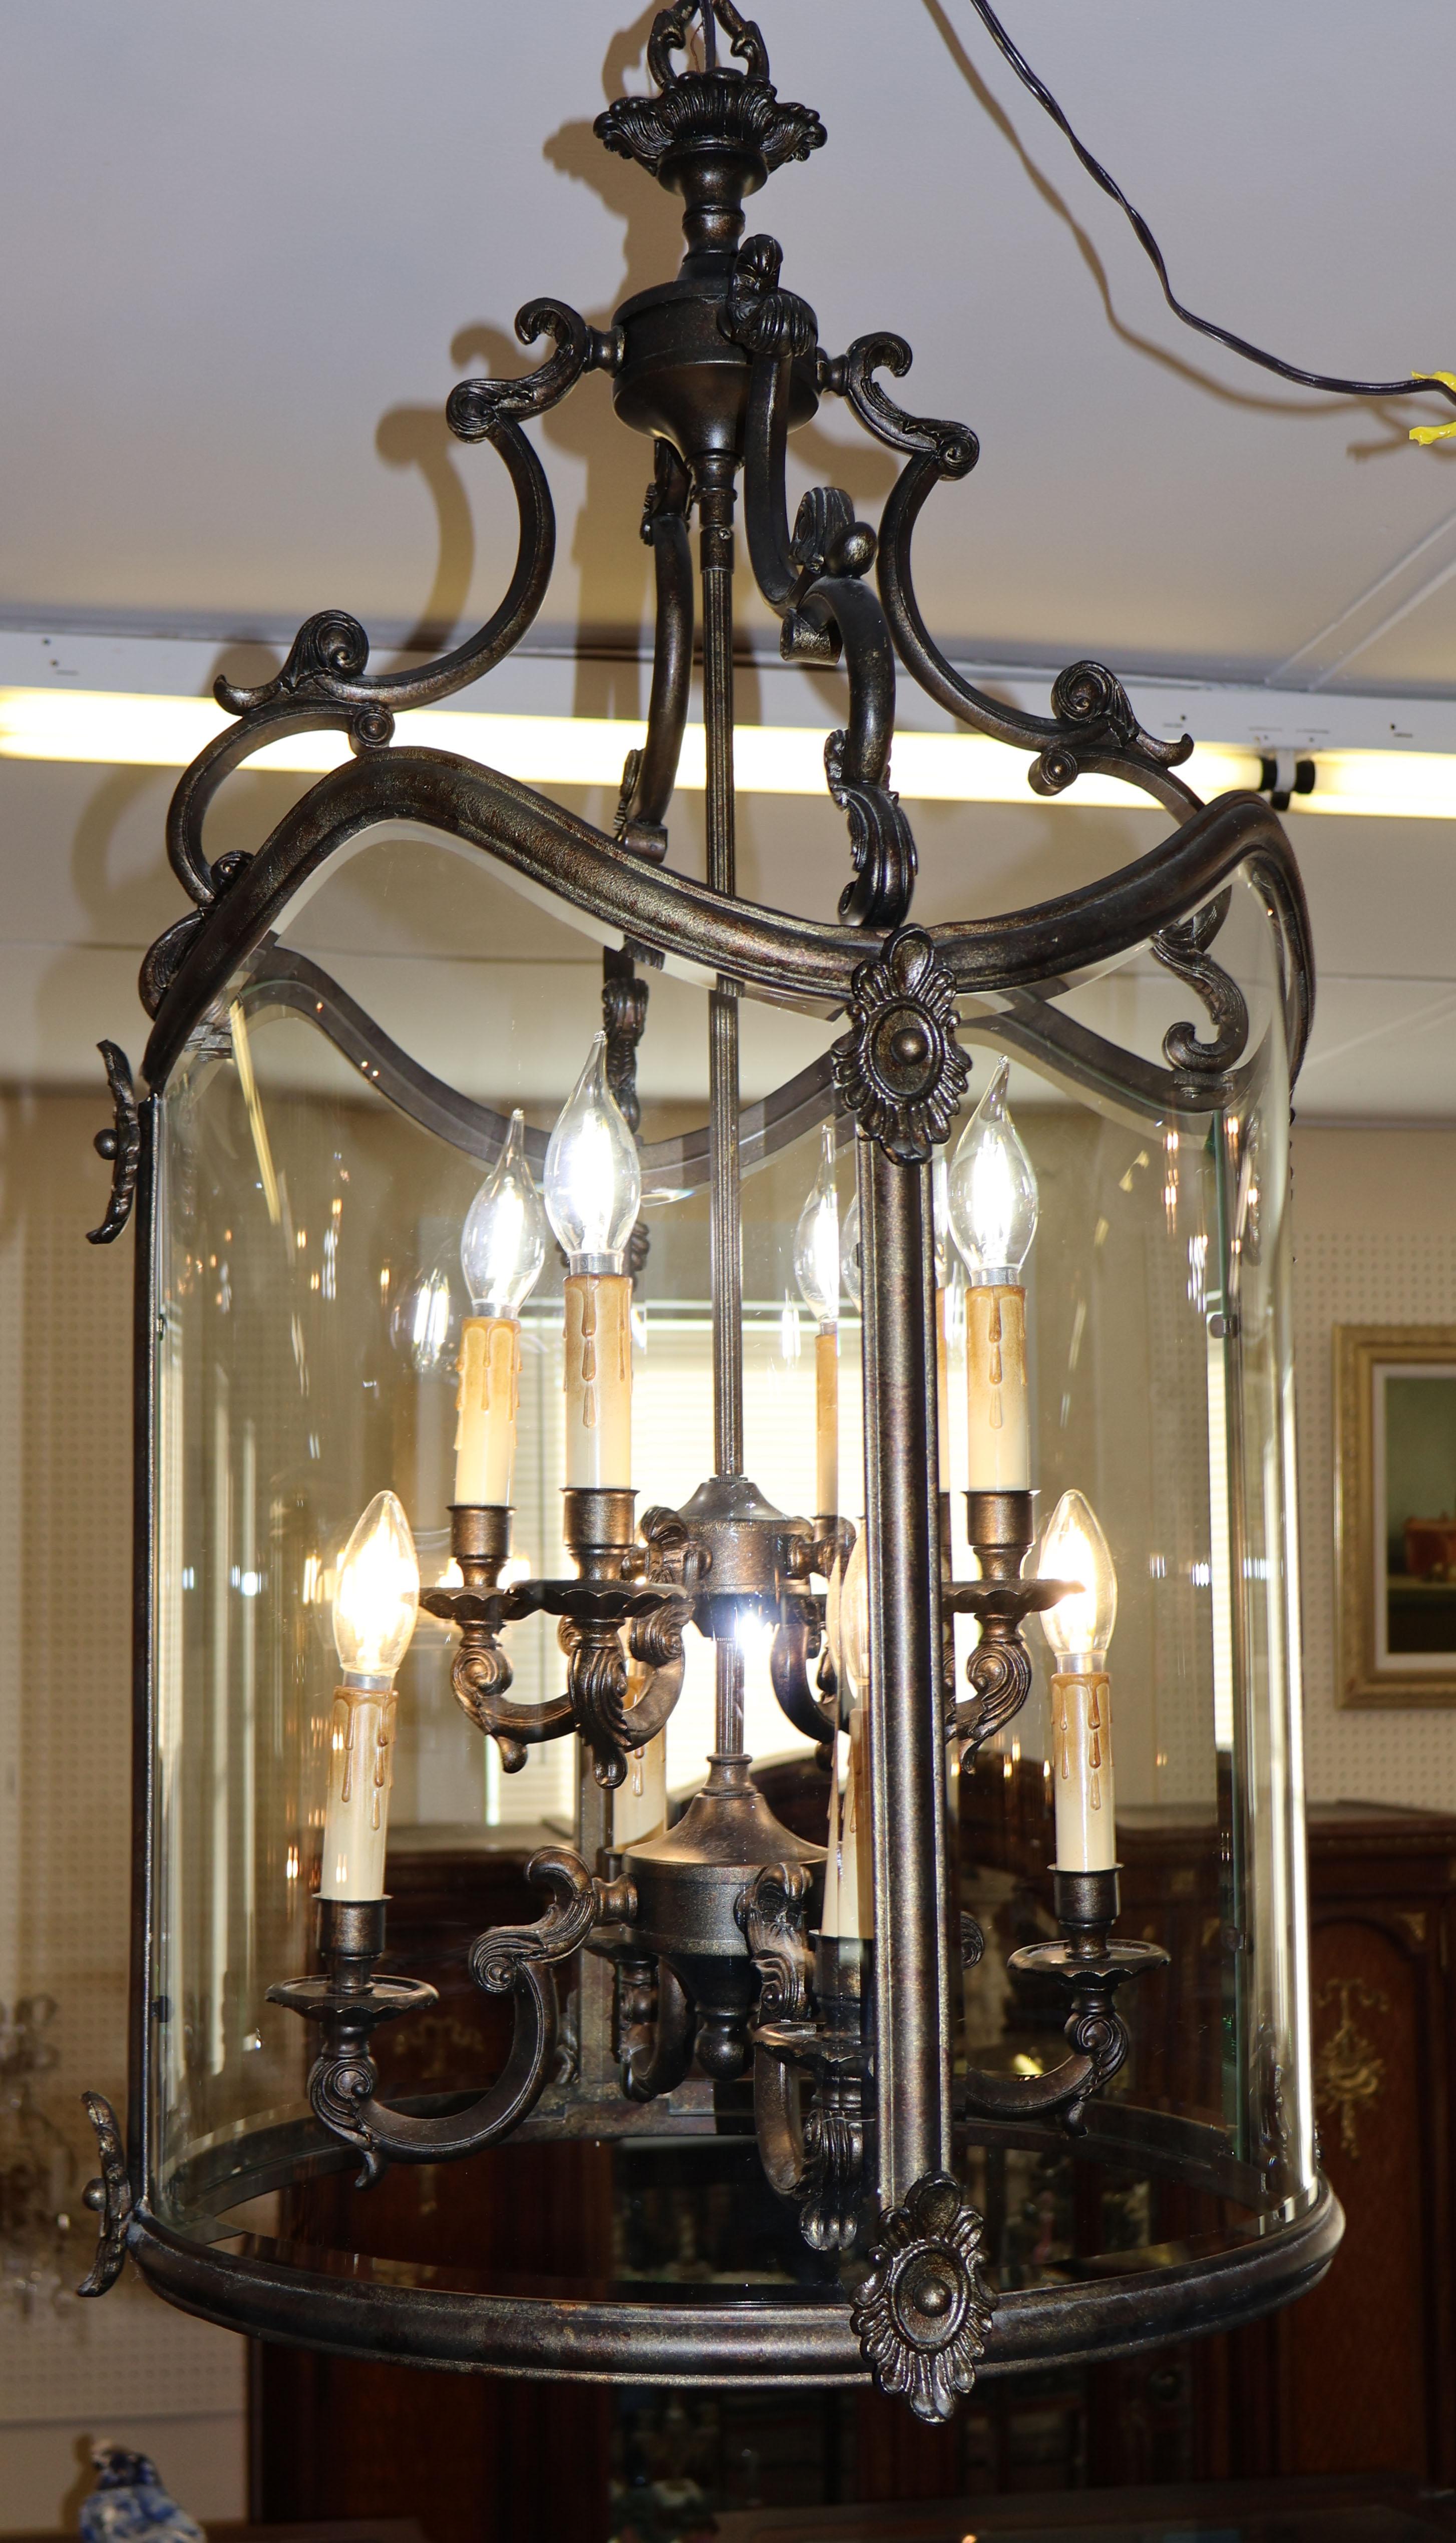 Louis XVI French Style 8 Light Dark Bronze Chandelier Lantern

Dimensions : 32